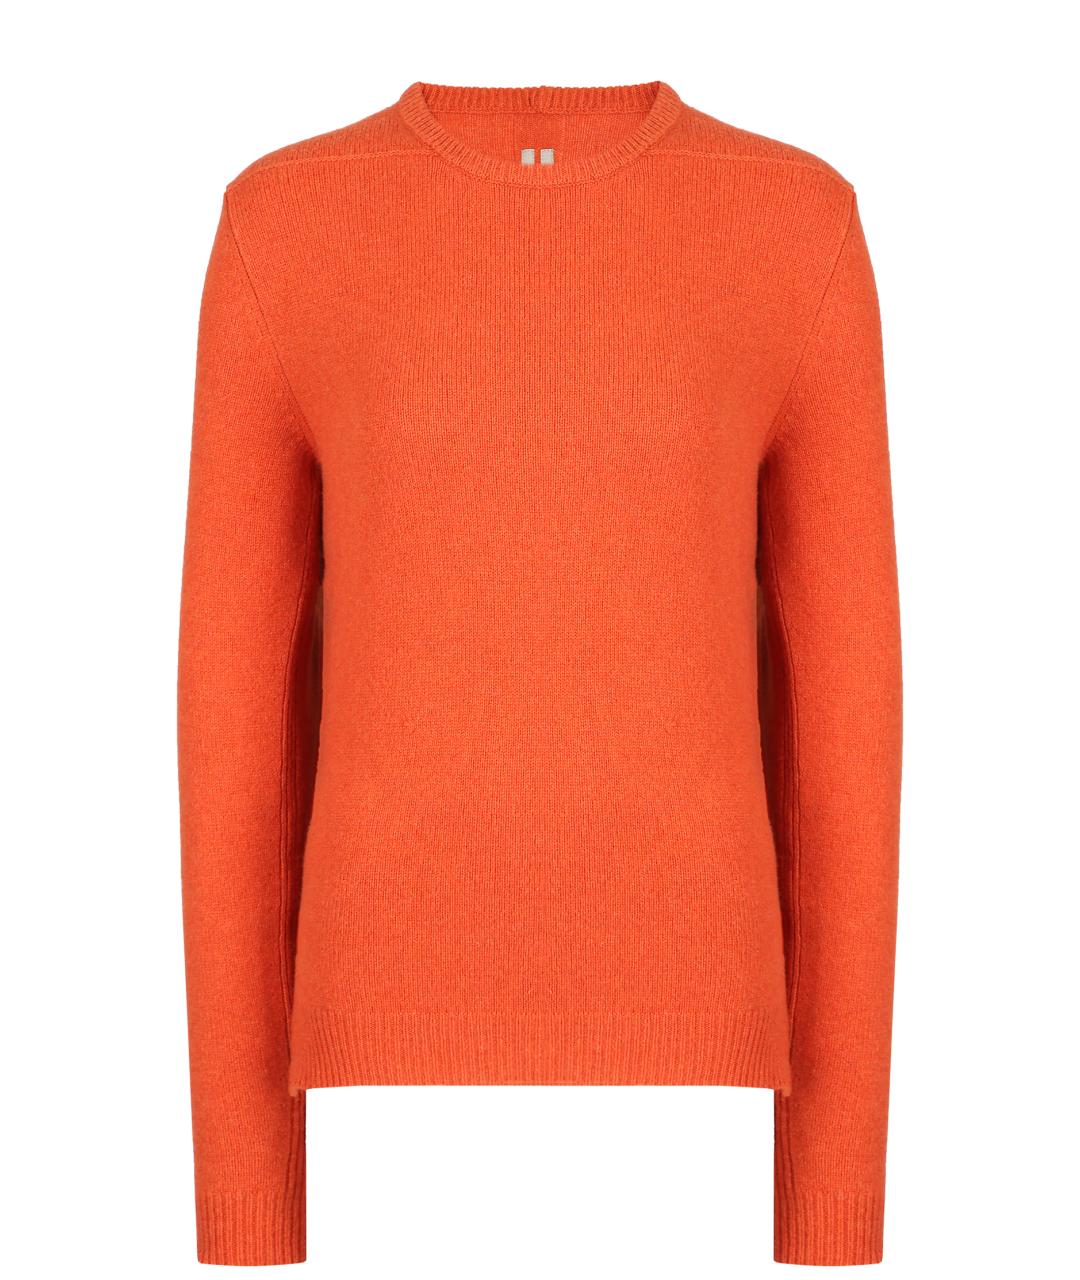 RICK OWENS Оранжевый кашемировый джемпер / свитер, фото 1